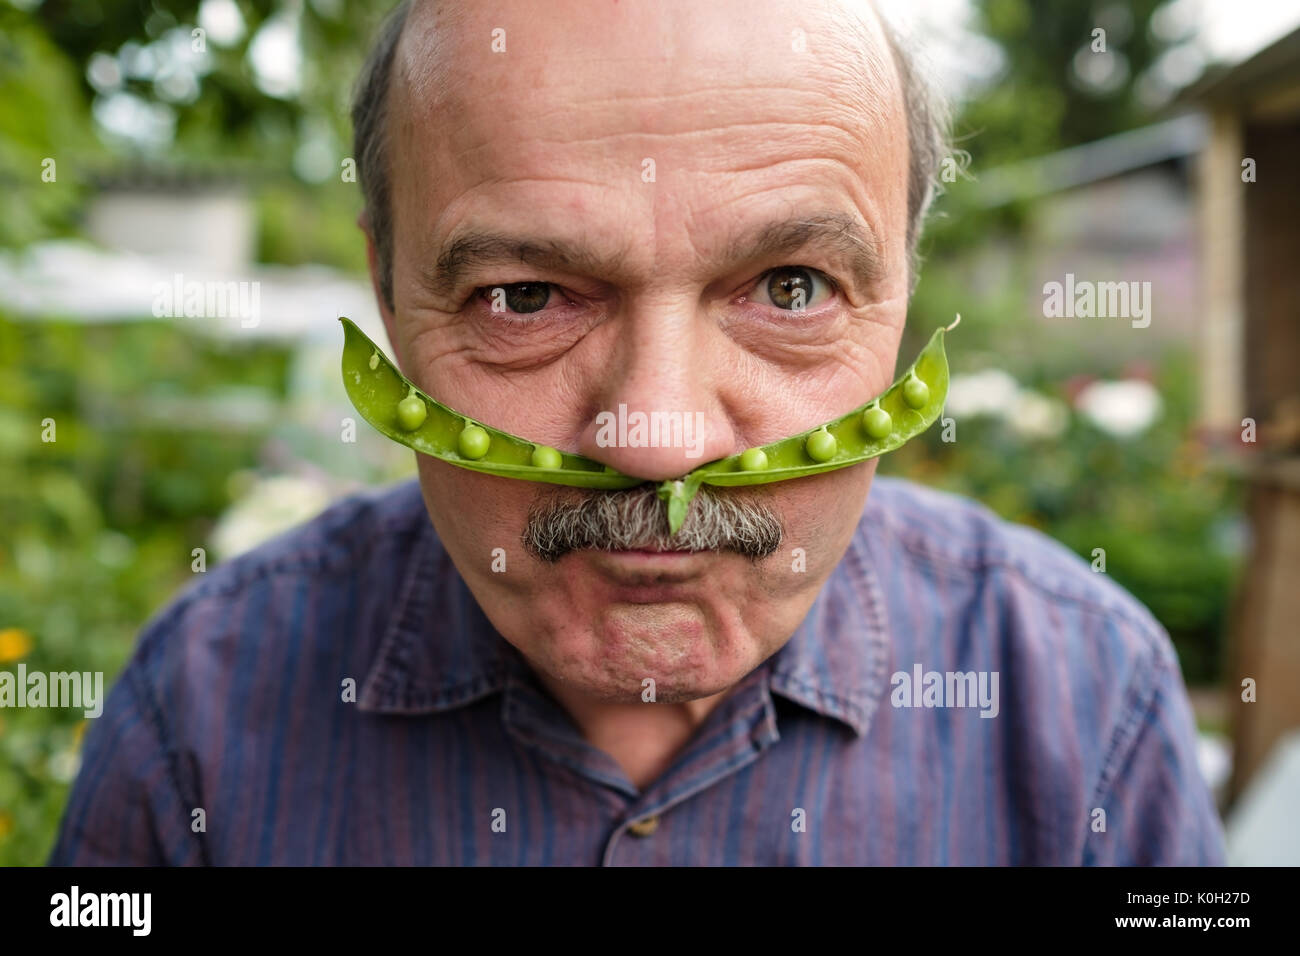 Un homme âgé est le bouffon. Il est titulaire d'un pea pod près de son visage comme une moustache Banque D'Images